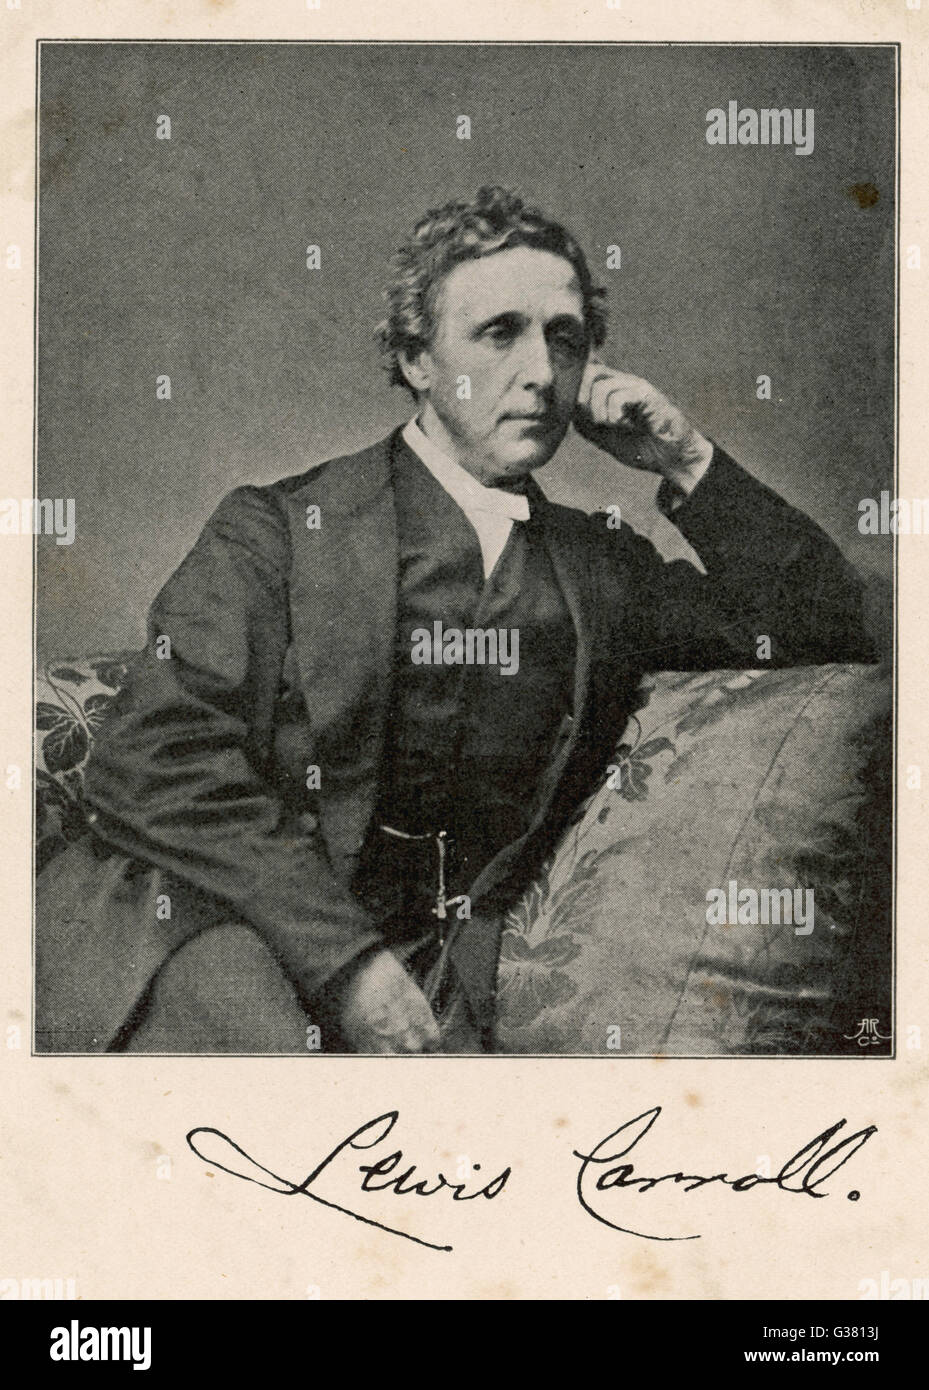 LEWIS CARROLL Nombre real : Charles Lutwidge Dodgson matemático inglés y escritor - creador de "Alicia" Fecha: 1832 - 1898 Foto de stock